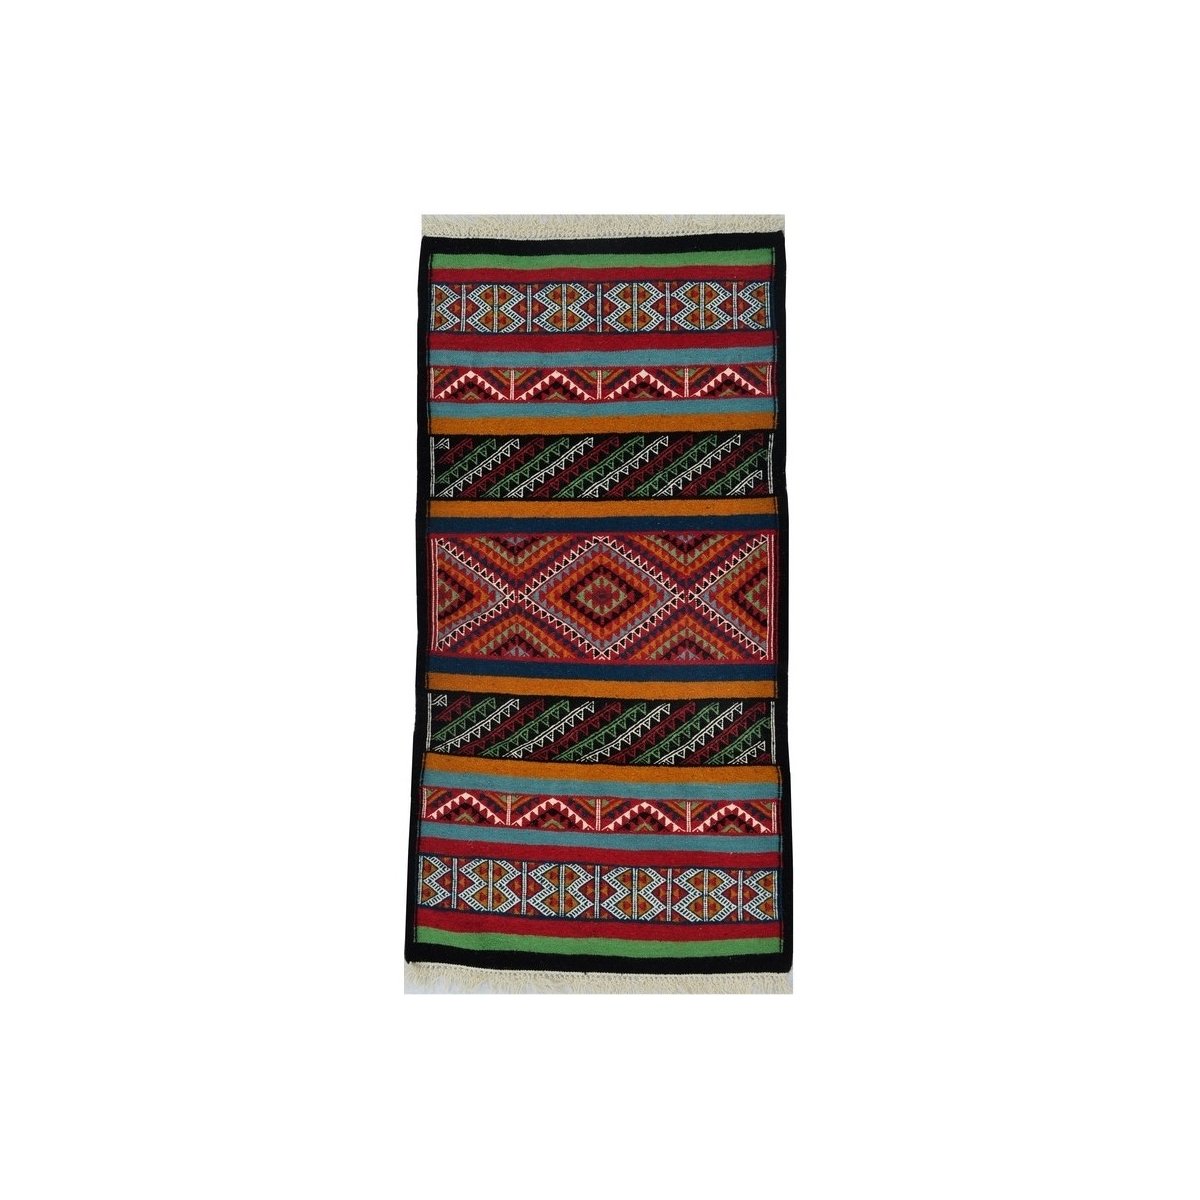 Tapis berbère Tapis Kilim Kef 60x110 Multicolore (Tissé main, Laine) Tapis kilim tunisien style tapis marocain. Tapis rectangula